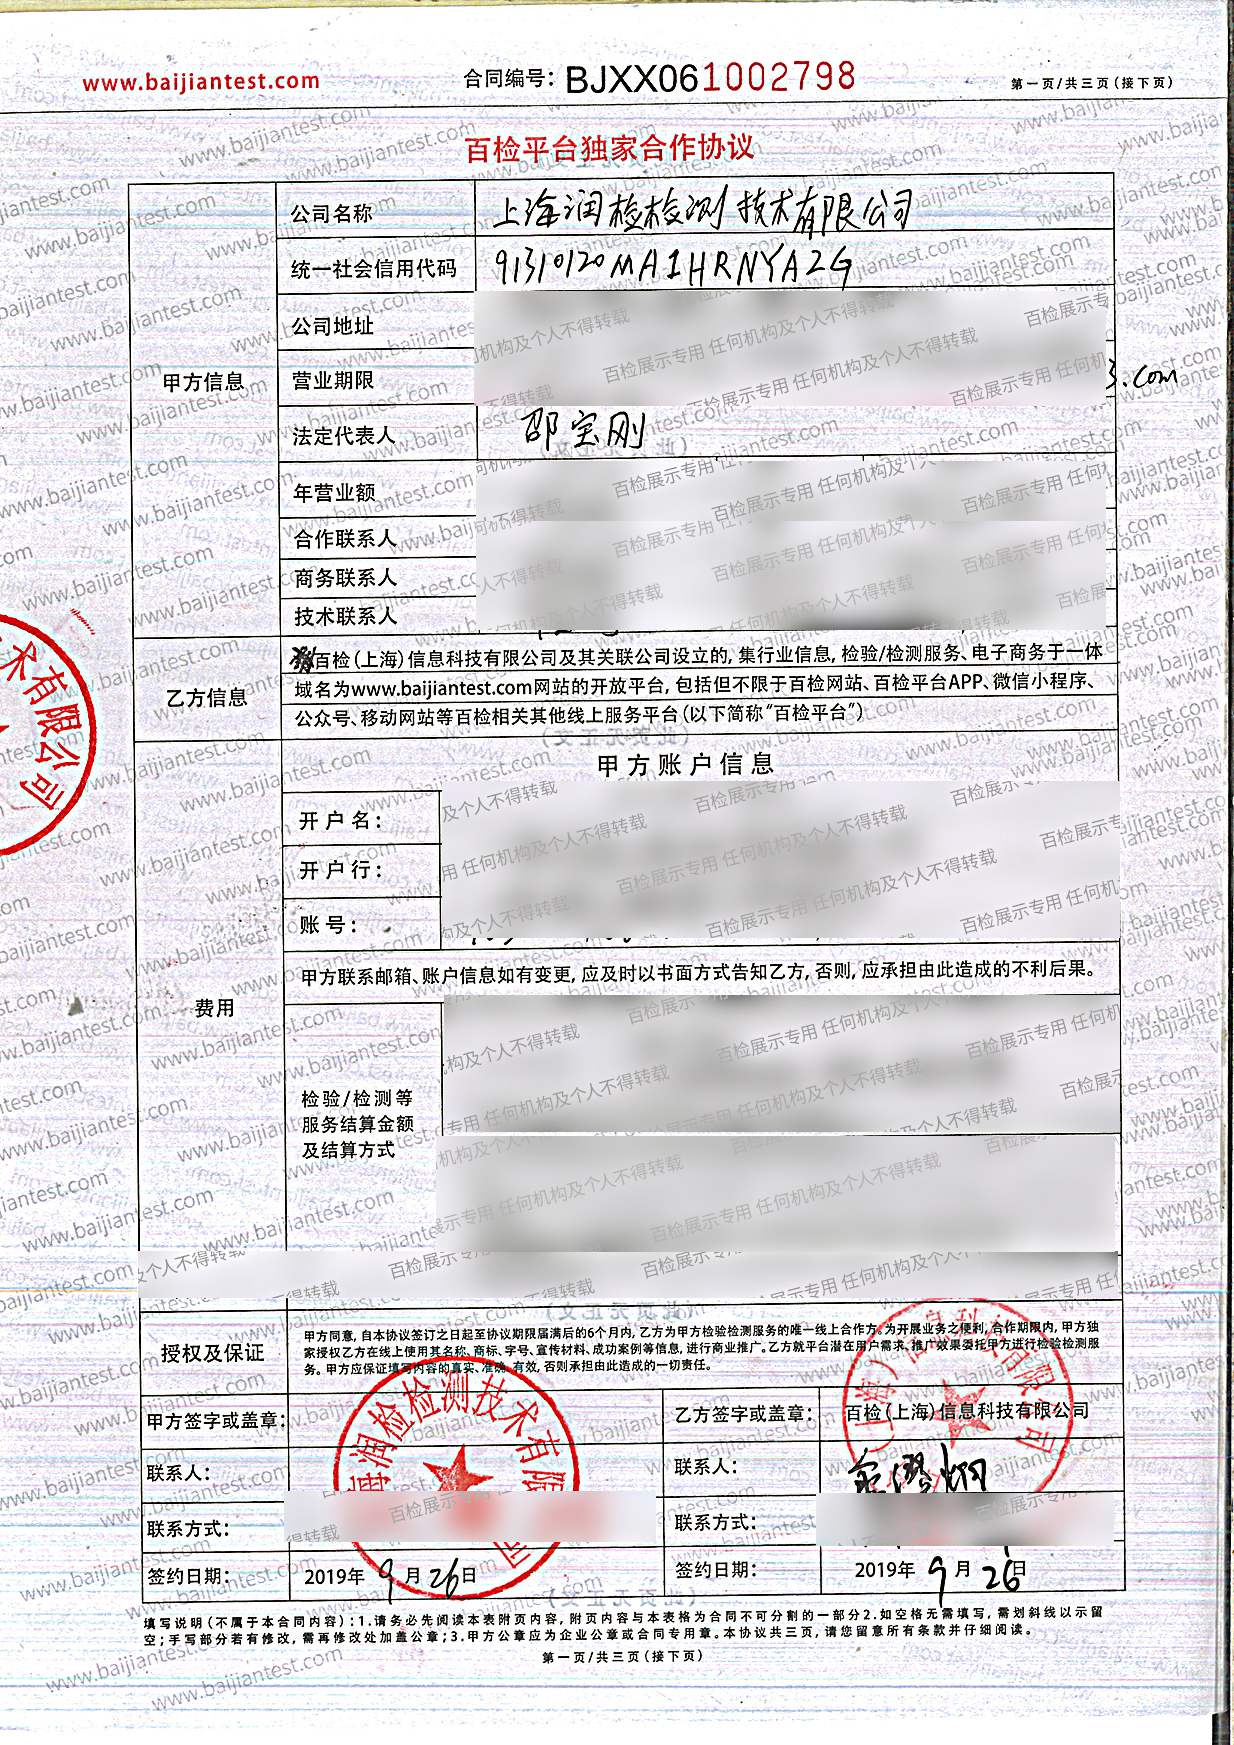 上海润检检测技术有限公司